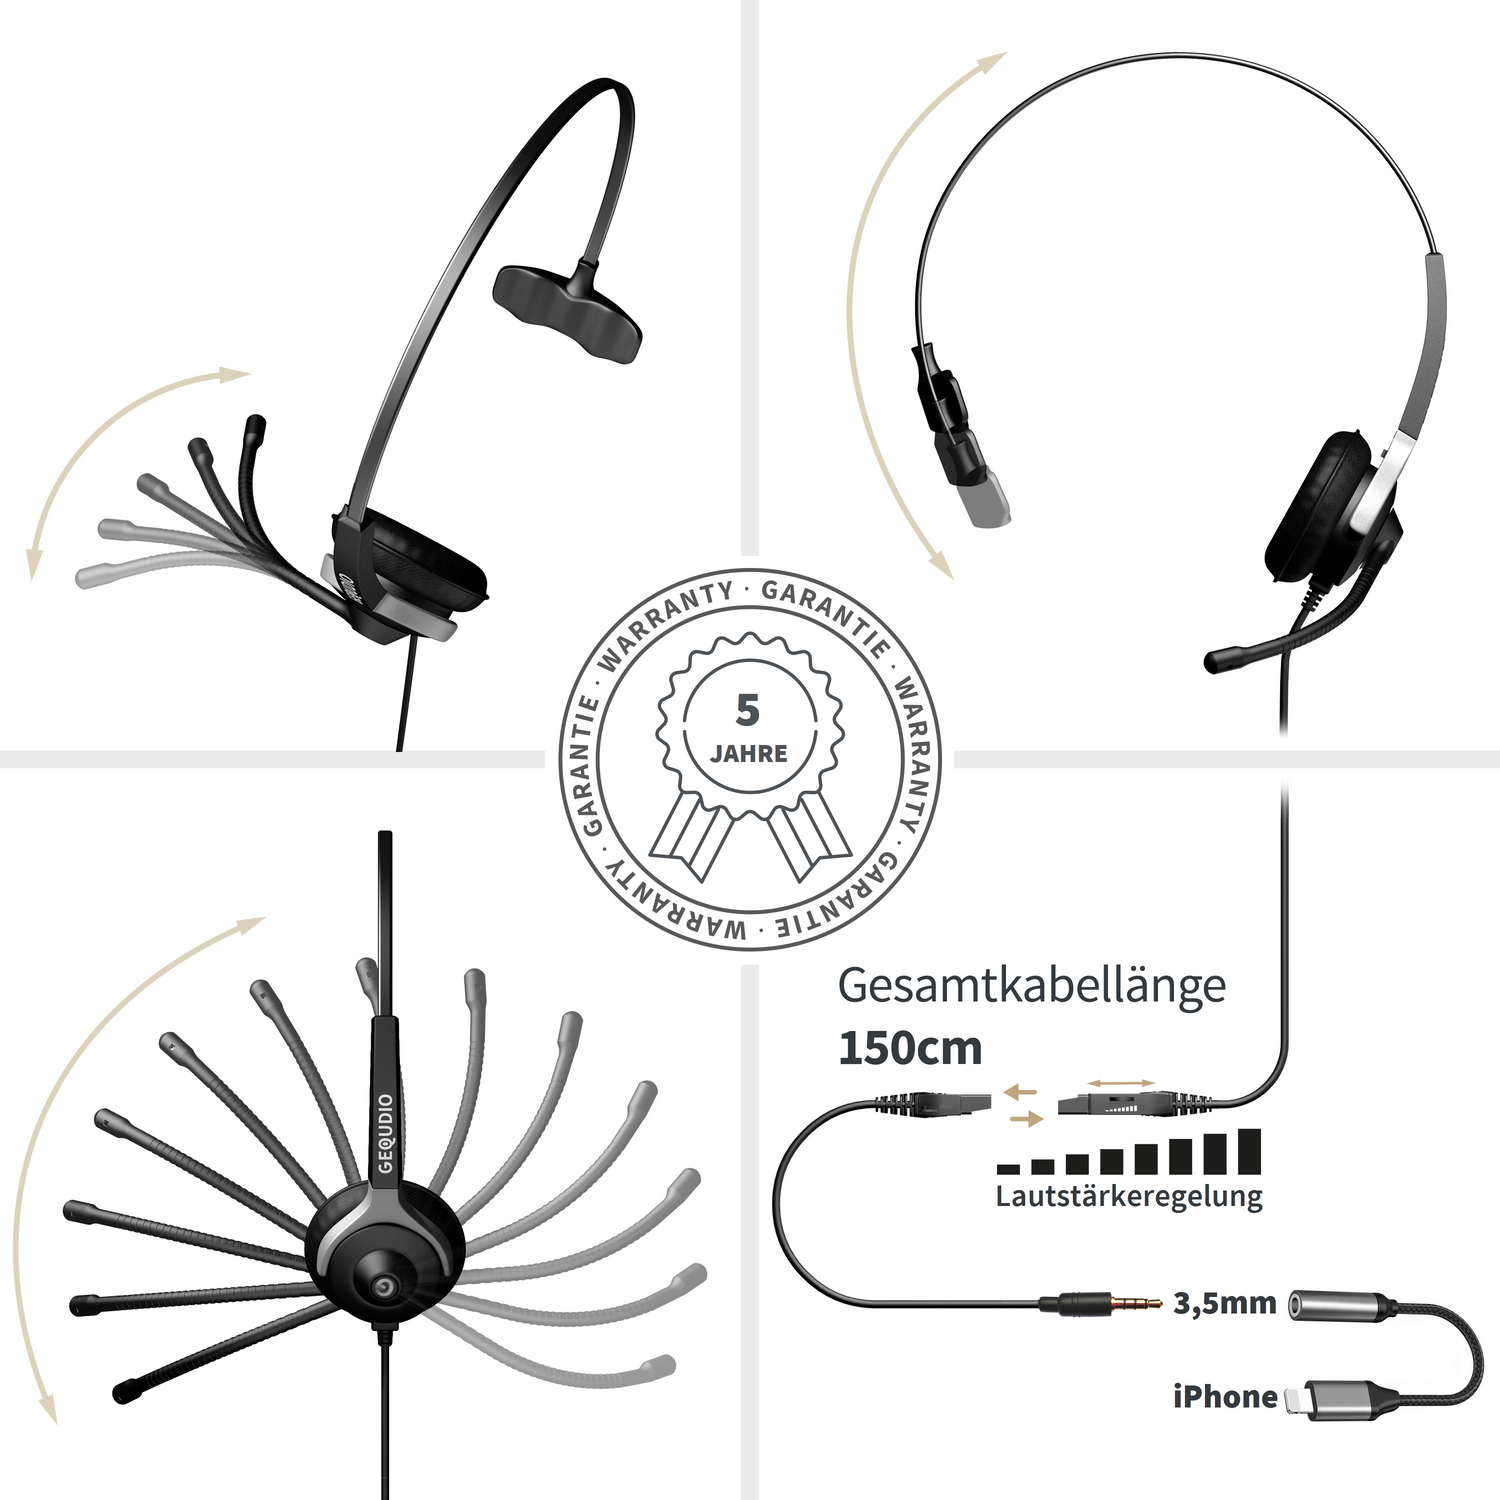 GEQUDIO Headset 1-Ohr mit 3,5mm On-ear Kabel-Adapter, Headset und Klinke Schwarz